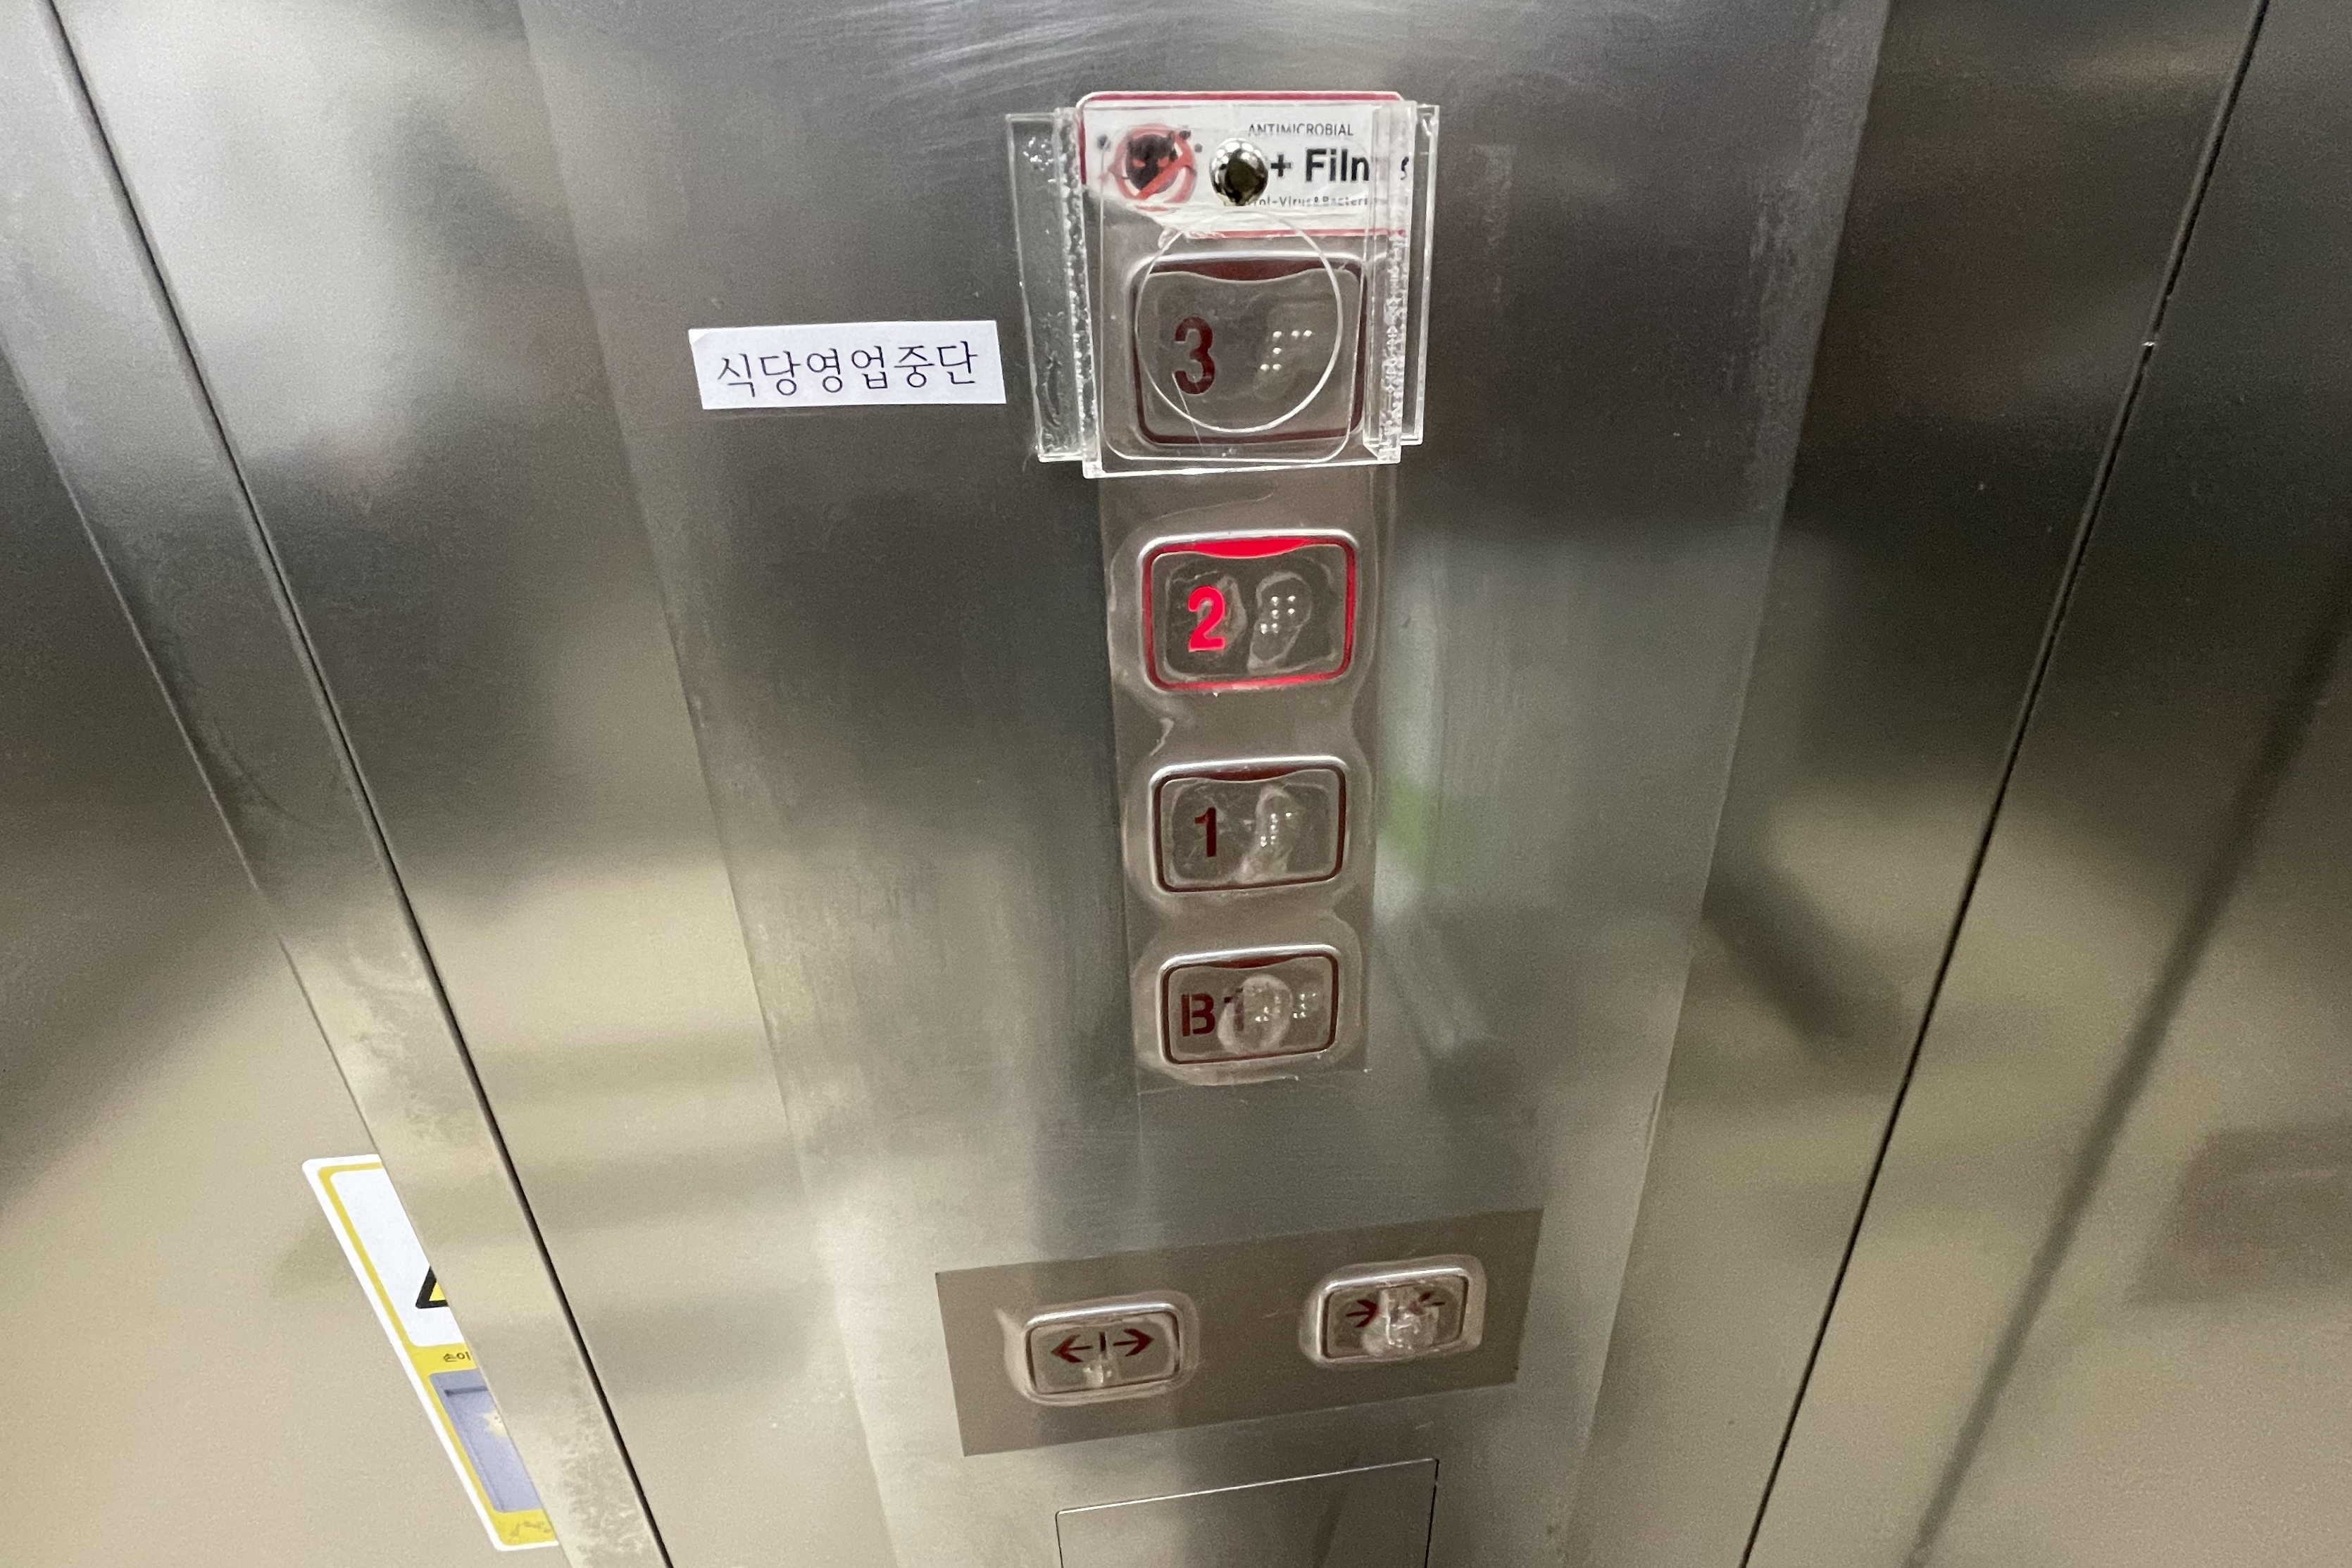 엘리베이터0 : 지하 1층부터 3층까지 버튼 중 2층 버튼이 켜진 엘리베이터 버튼